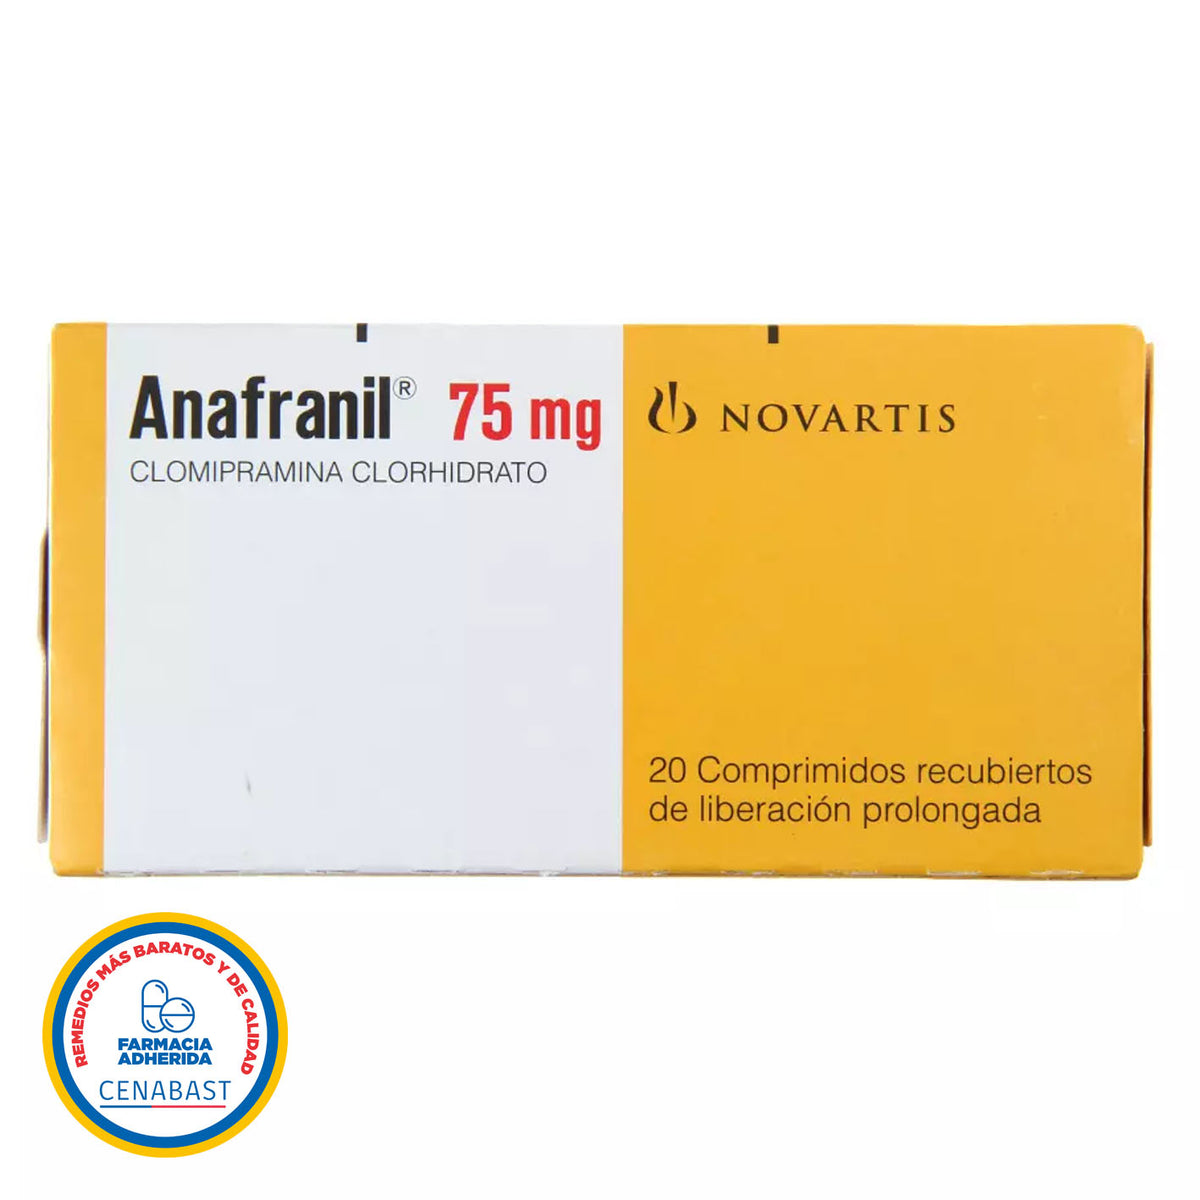 Anafranil 75mg Comprimidos Recubiertos de Liberación Prolongada Producto Cenabast